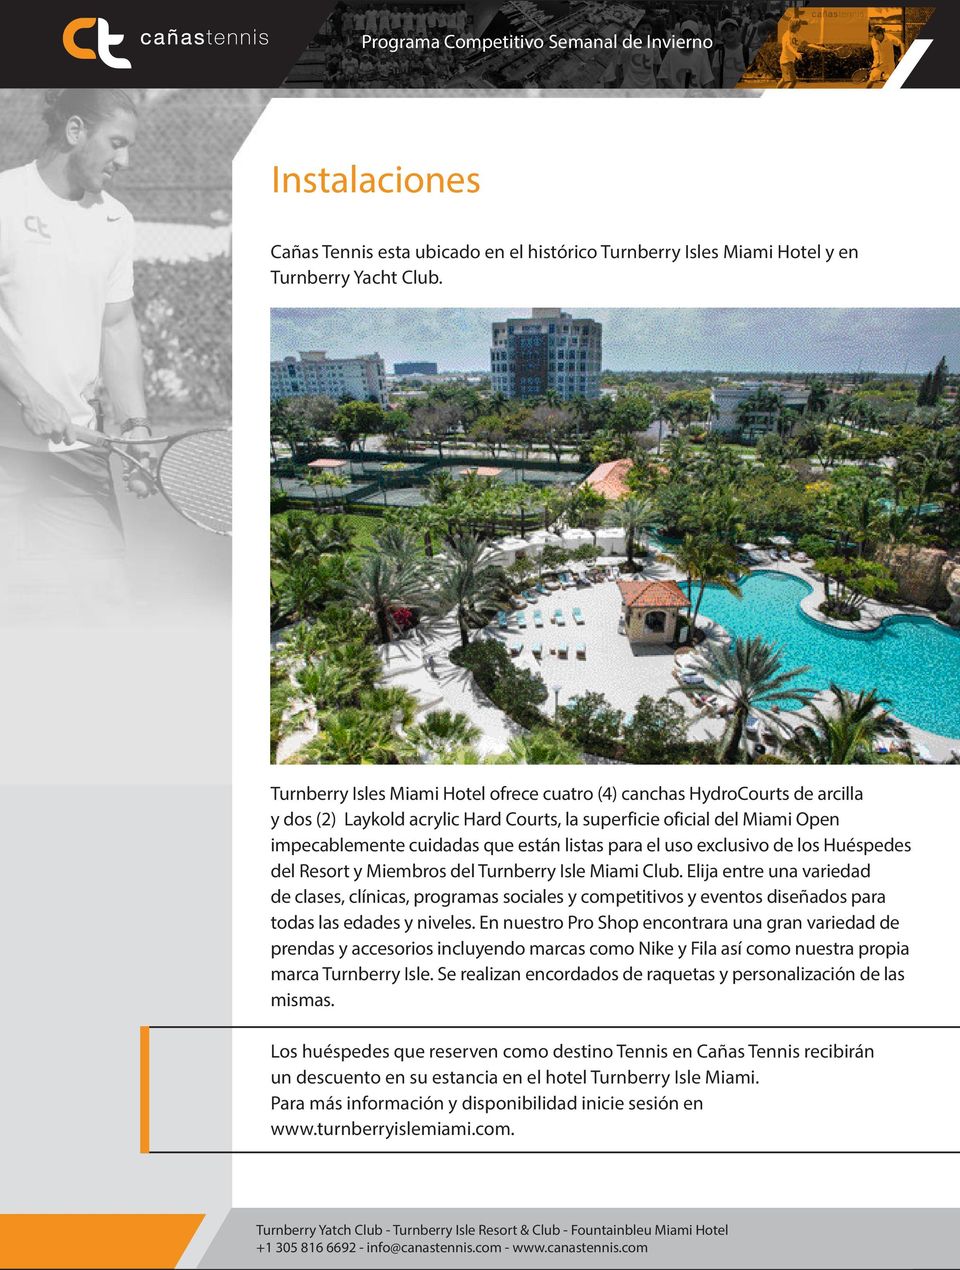 el uso exclusivo de los Huéspedes del Resort y Miembros del Turnberry Isle Miami Club.